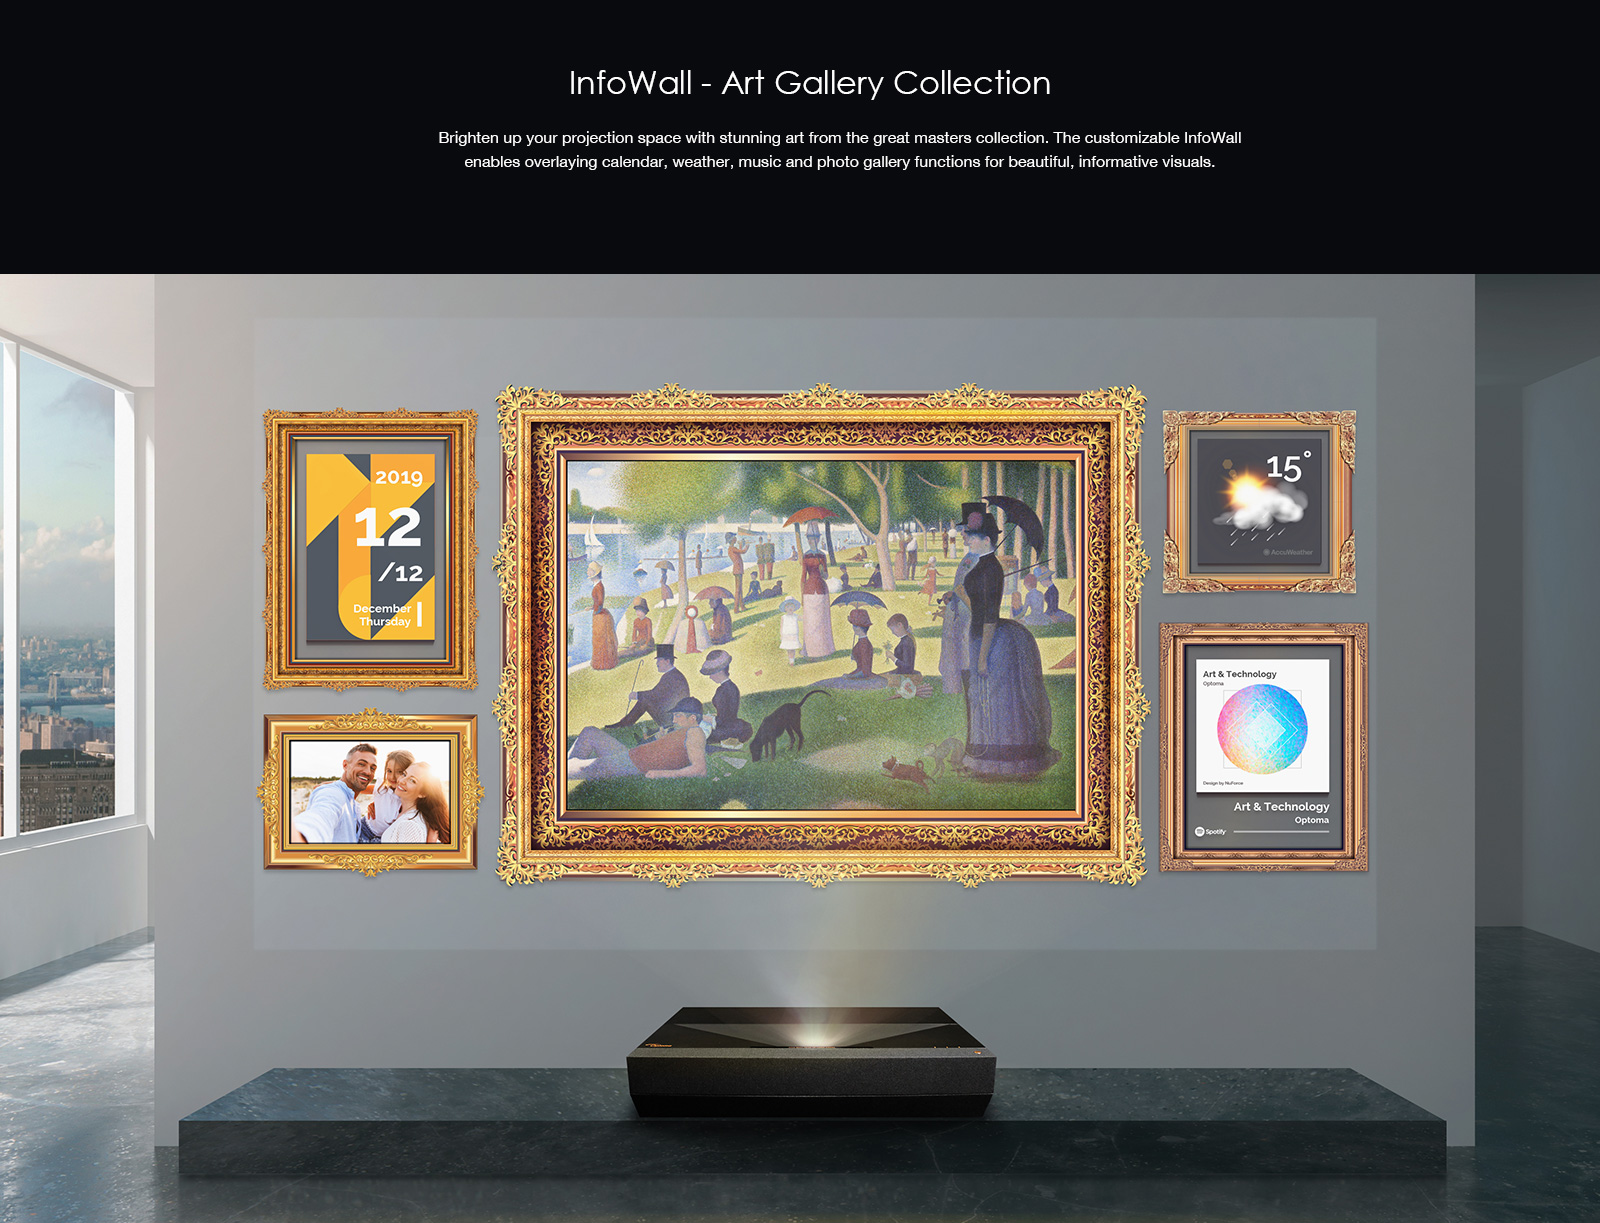 Công nghệ InfoWall - Art Gallery Collection trên máy chiếu Optoma CinemaX P1